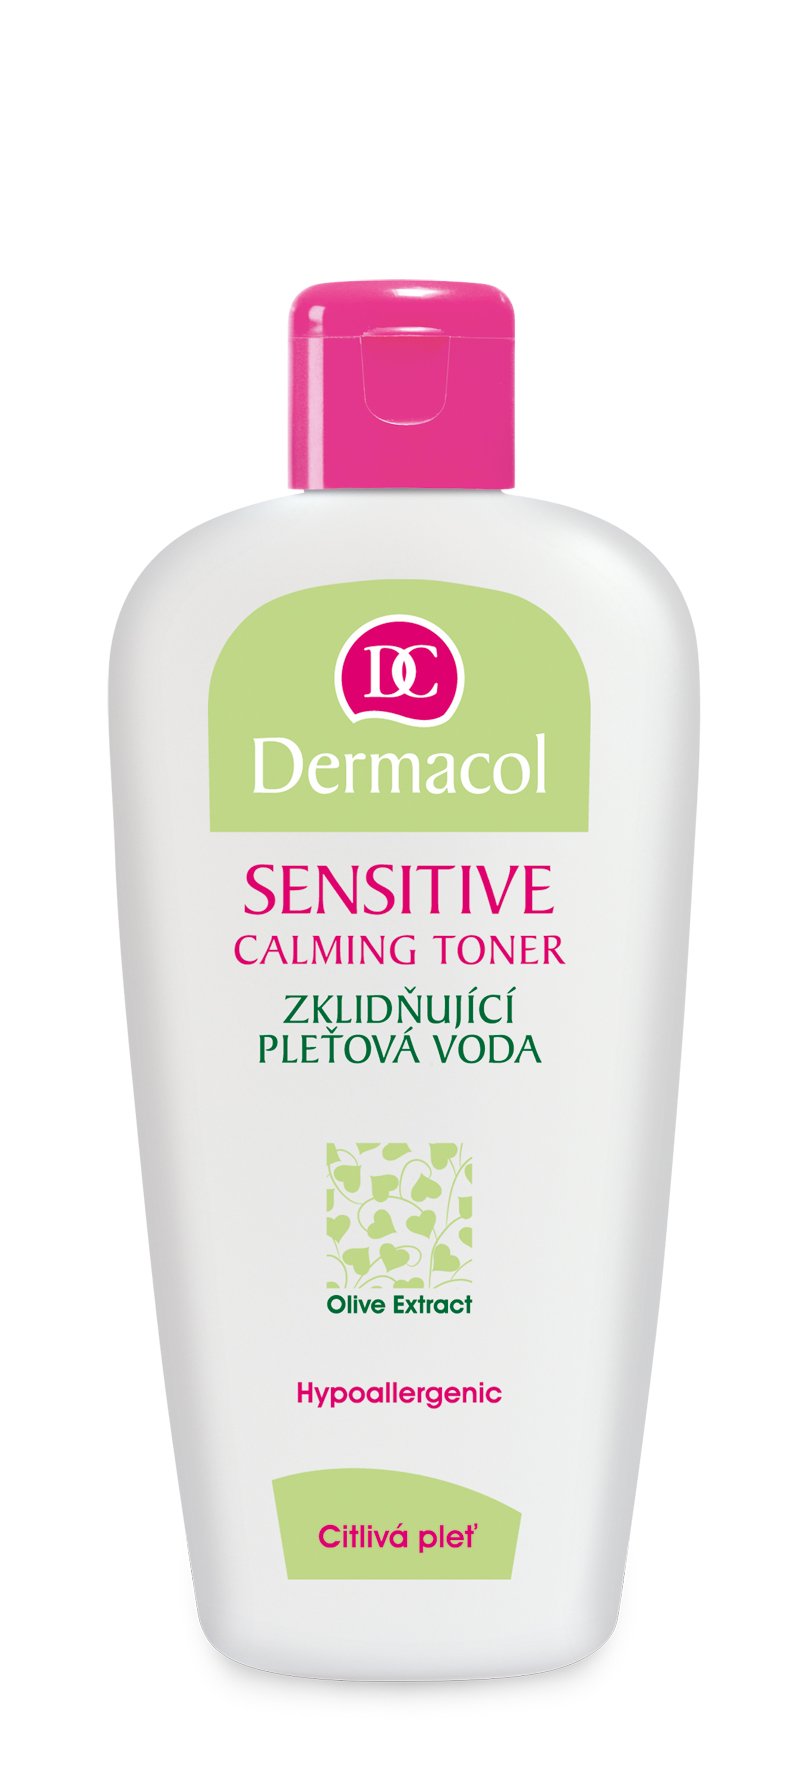 Тоник для чувствительной кожи Dermacol Sensitive, с экстрактом маслин, 200 мл - фото 1